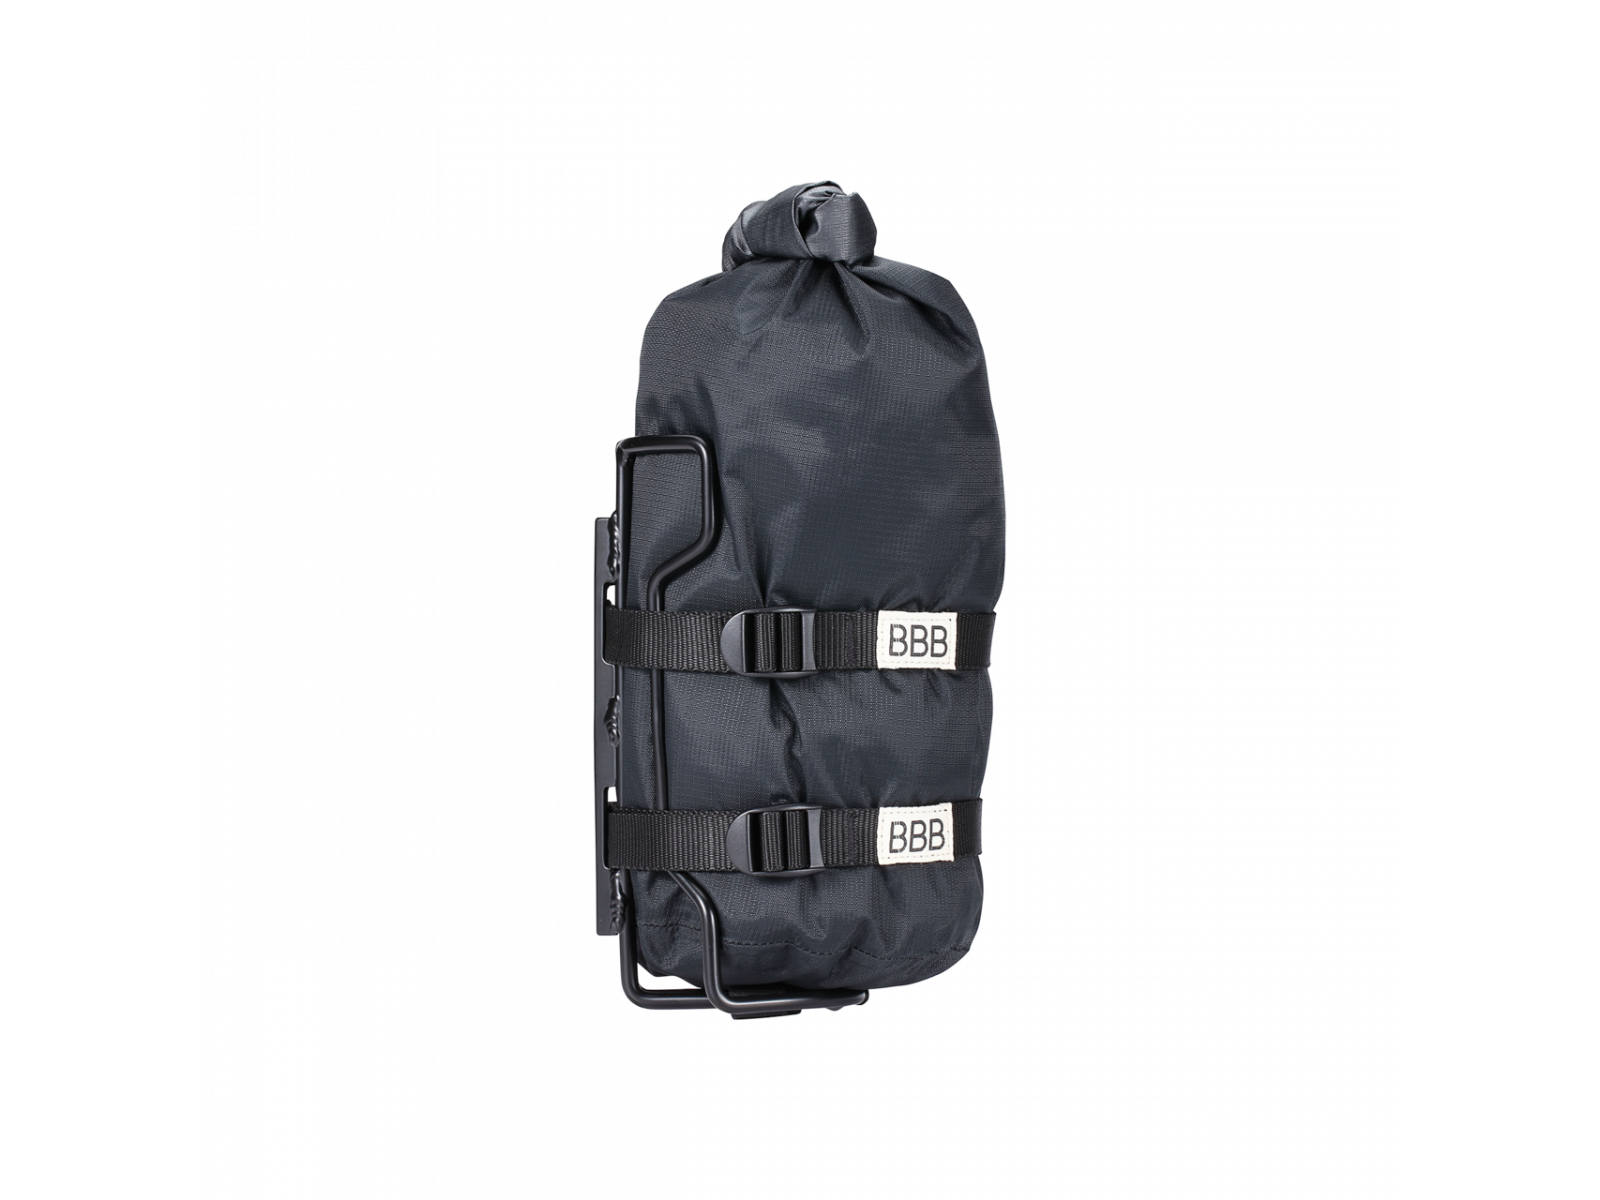 Frame bag BBB BSB-145 Stack Pack with holder black 30x14x14cm - 4l